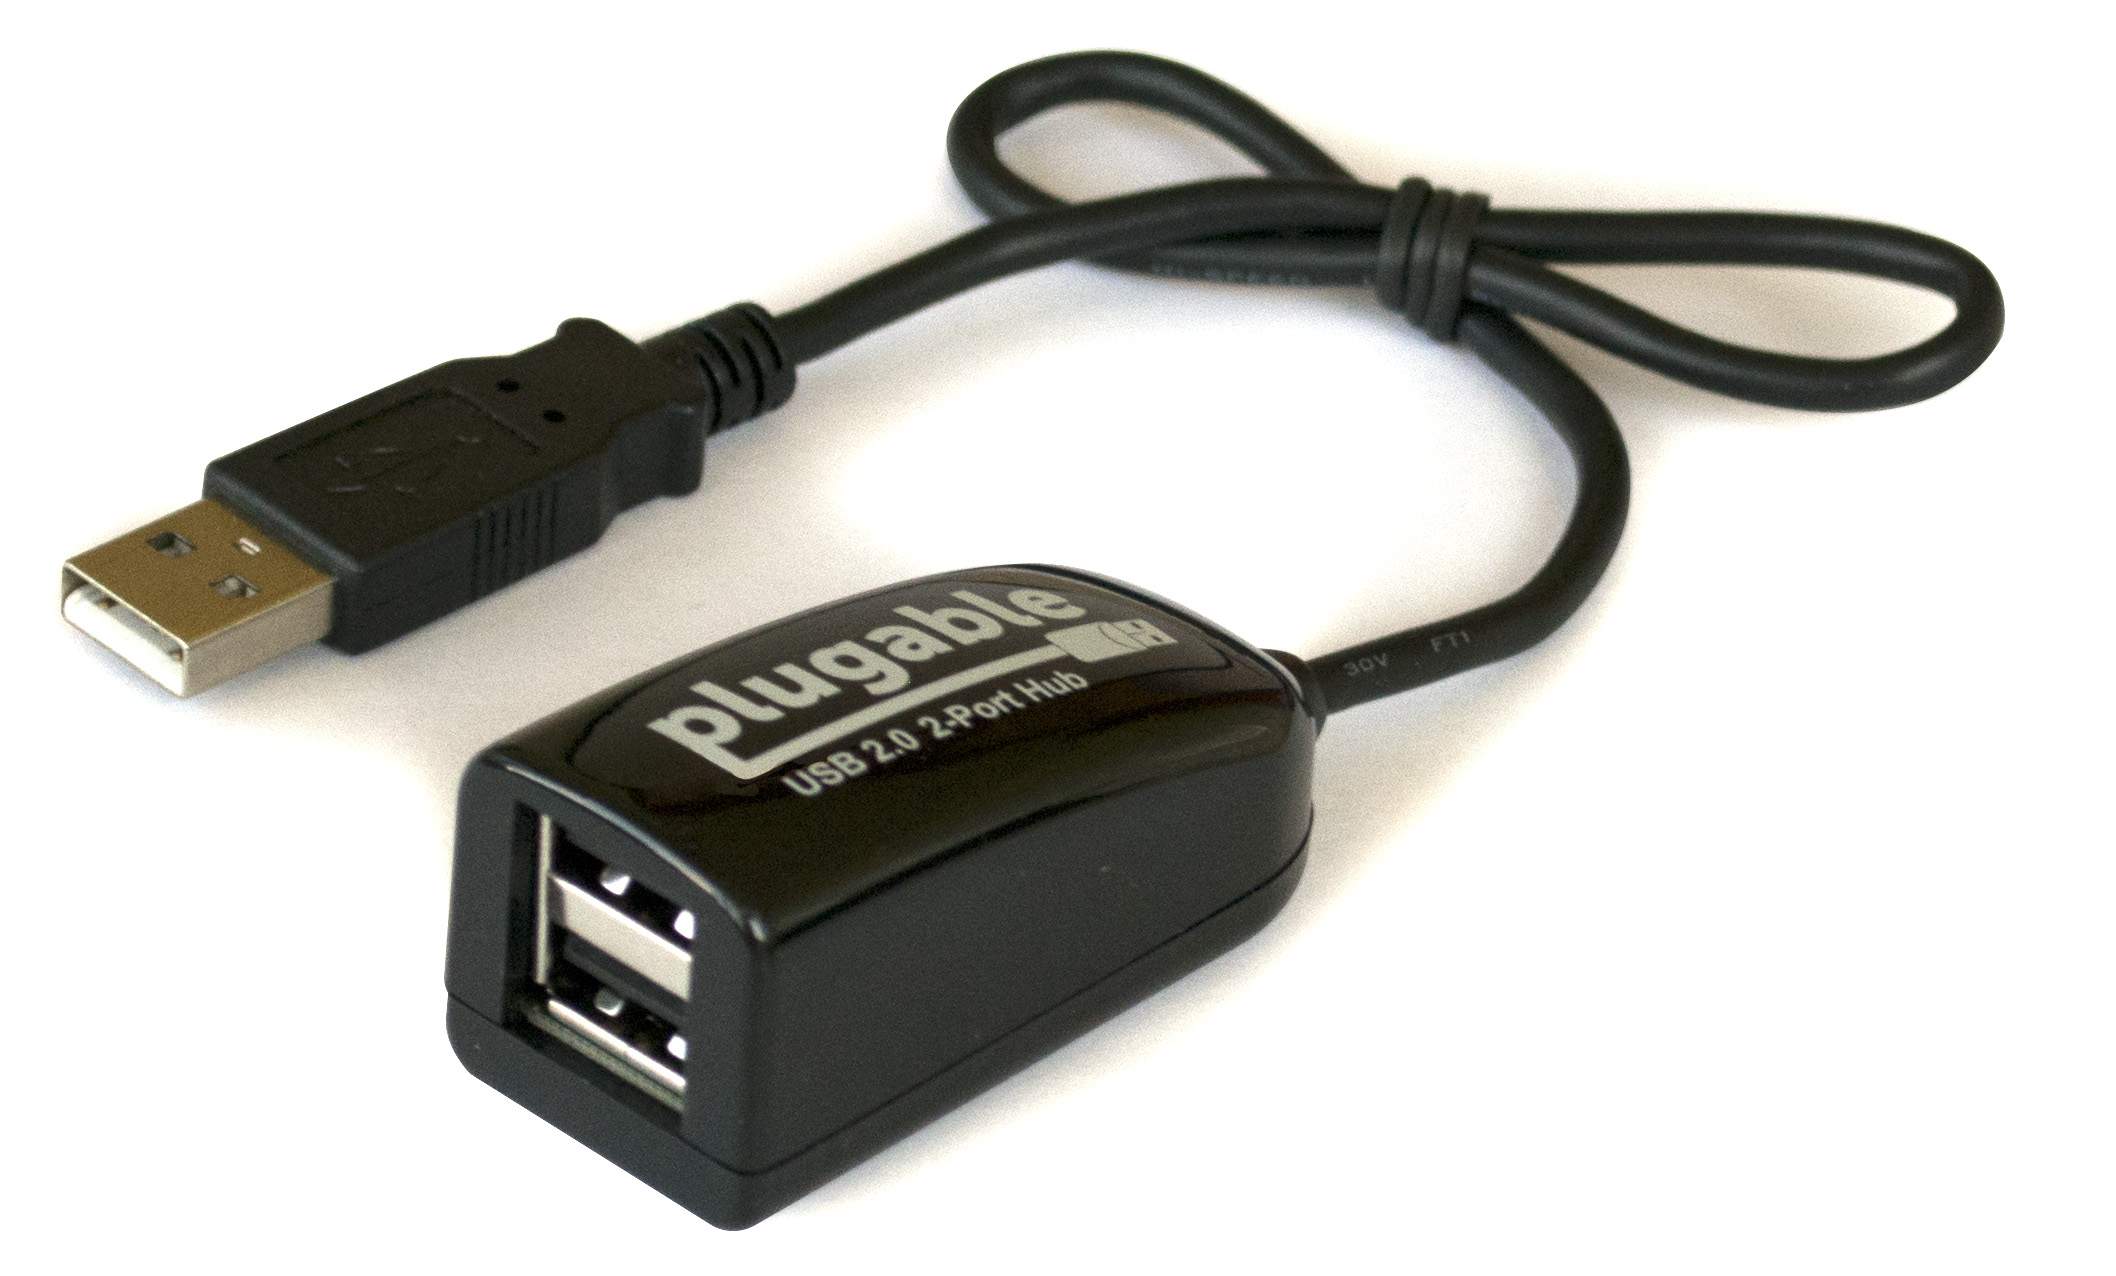 High usb 2.0. Porto USB 2.0 Type s+Hub. Hi-Speed USB 2.0 Port. USB 2.0 Hi-Speed Hub d800. 2 USB 2.0 A - USB Mini.